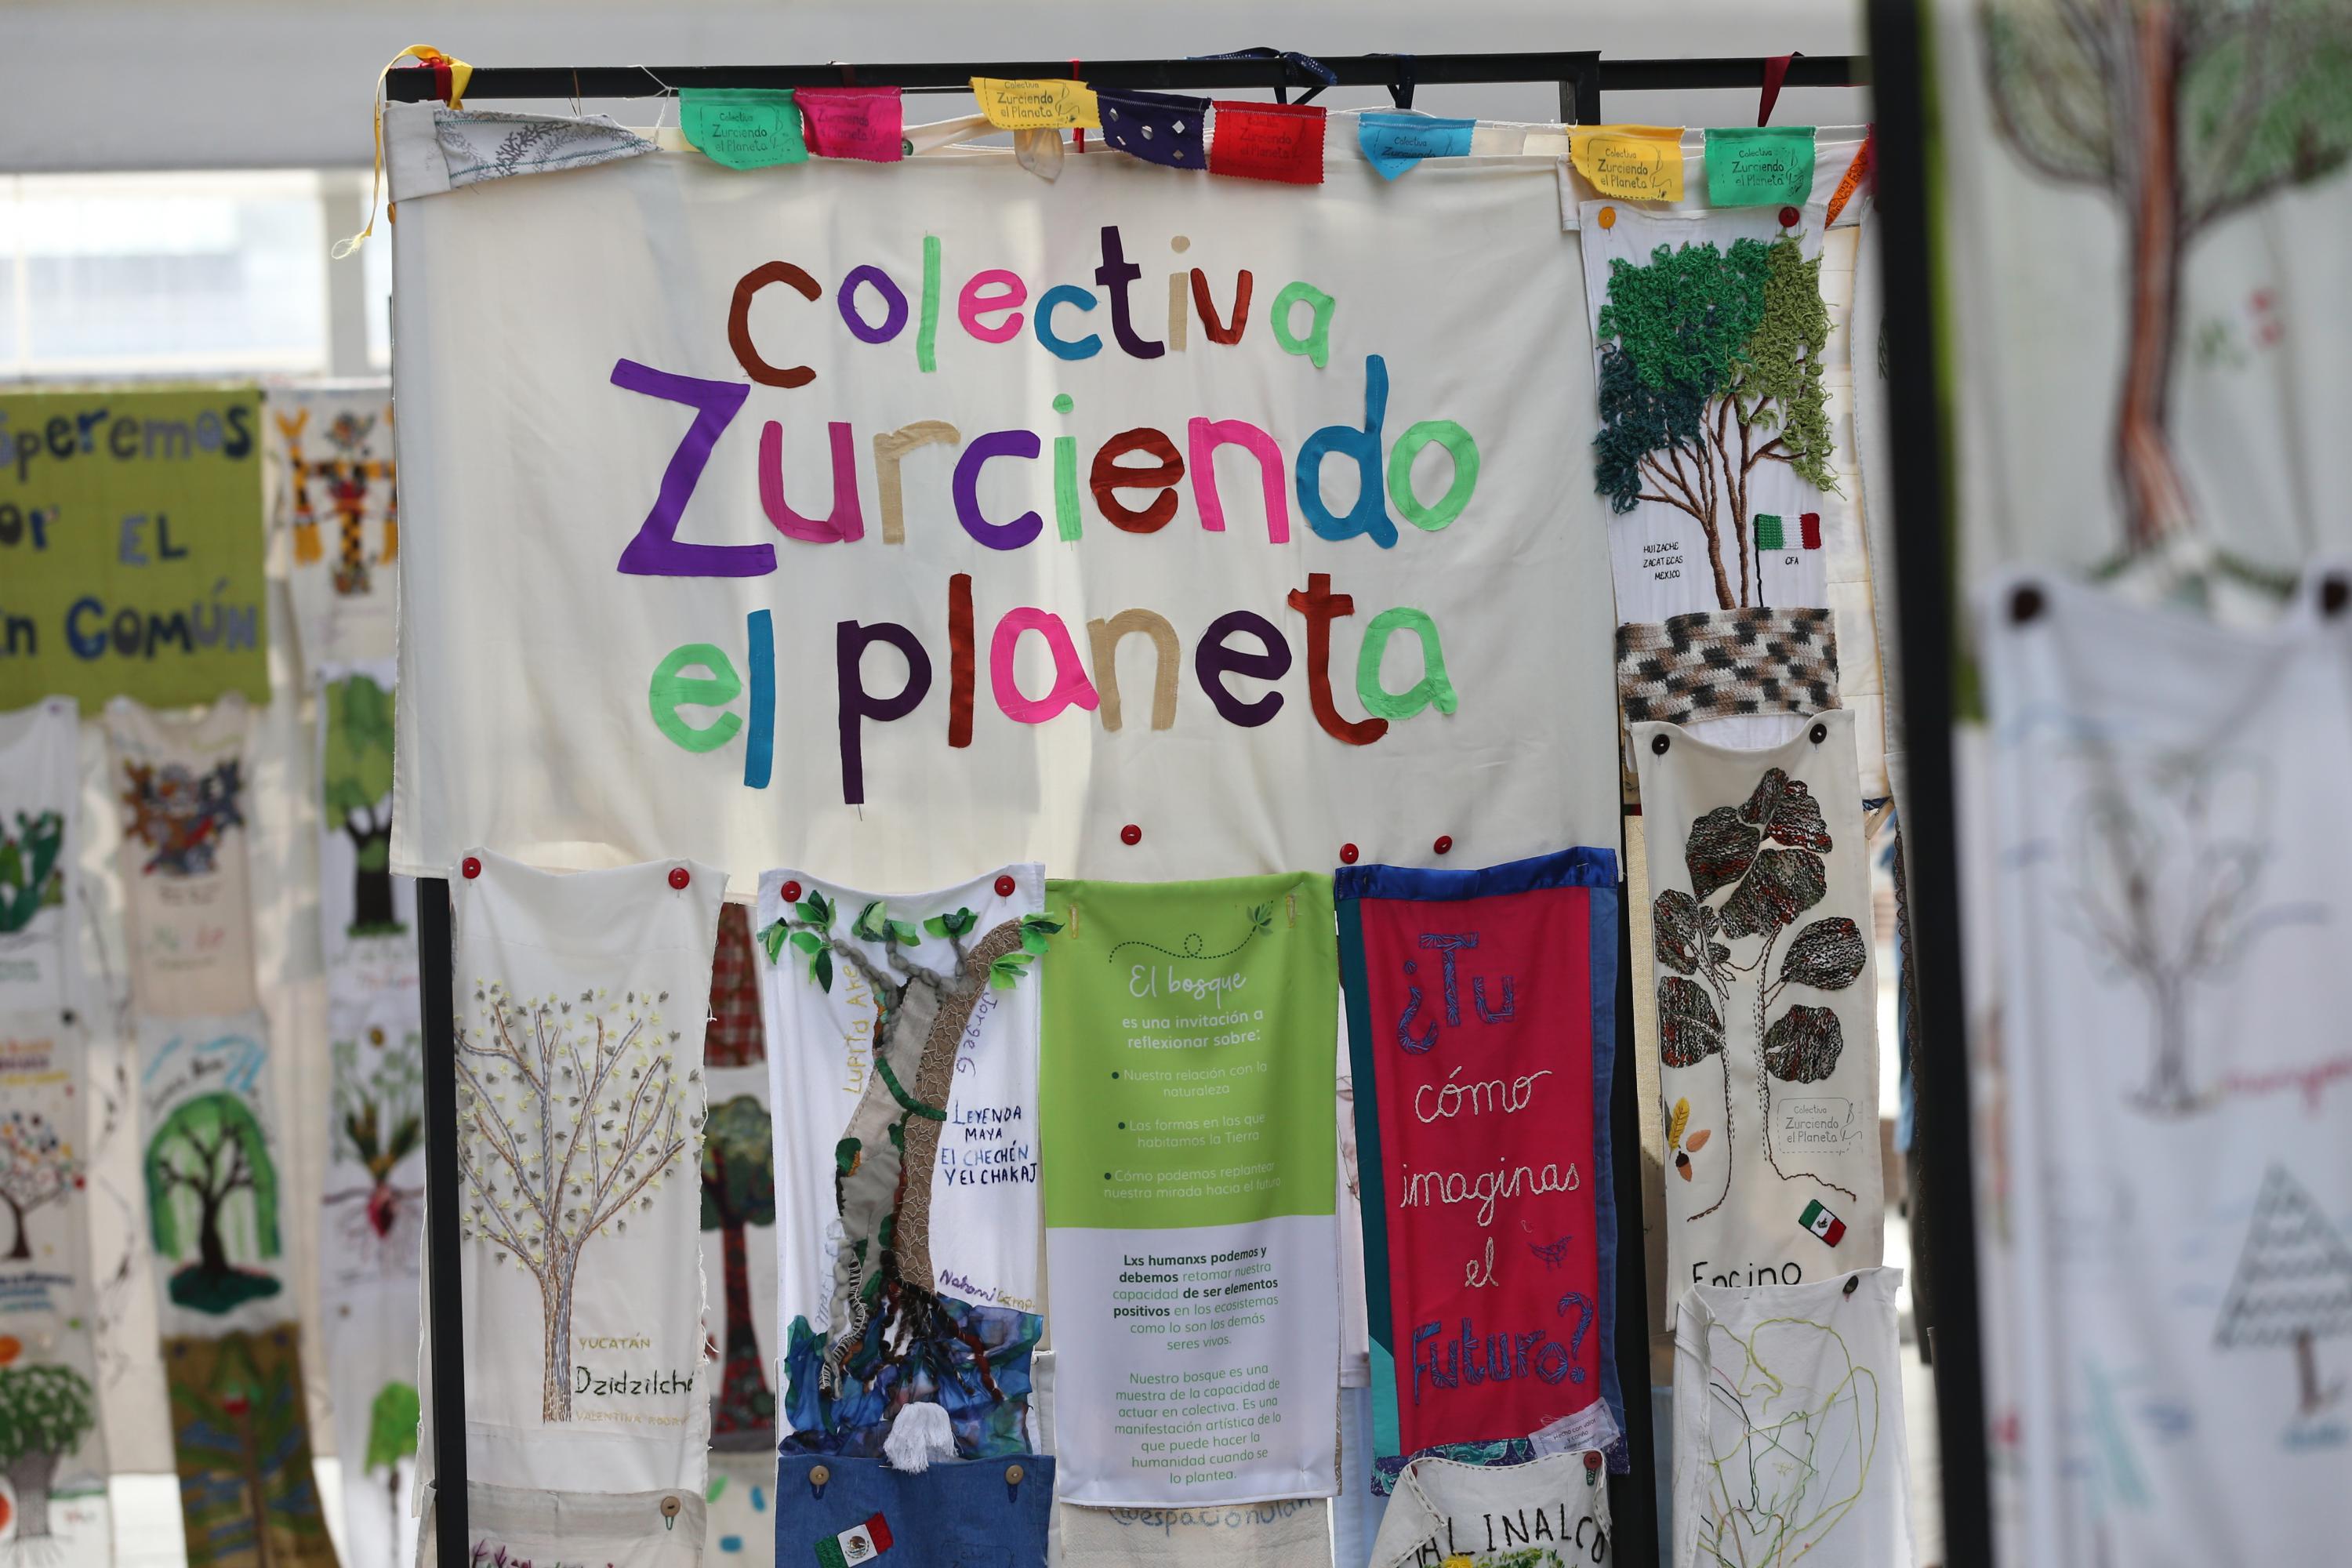 Museo de Ciencias Ambientales imparte talleres de educación ambiental y arte en Librería Carlos Fuentes, del 22 al 24 de noviembre